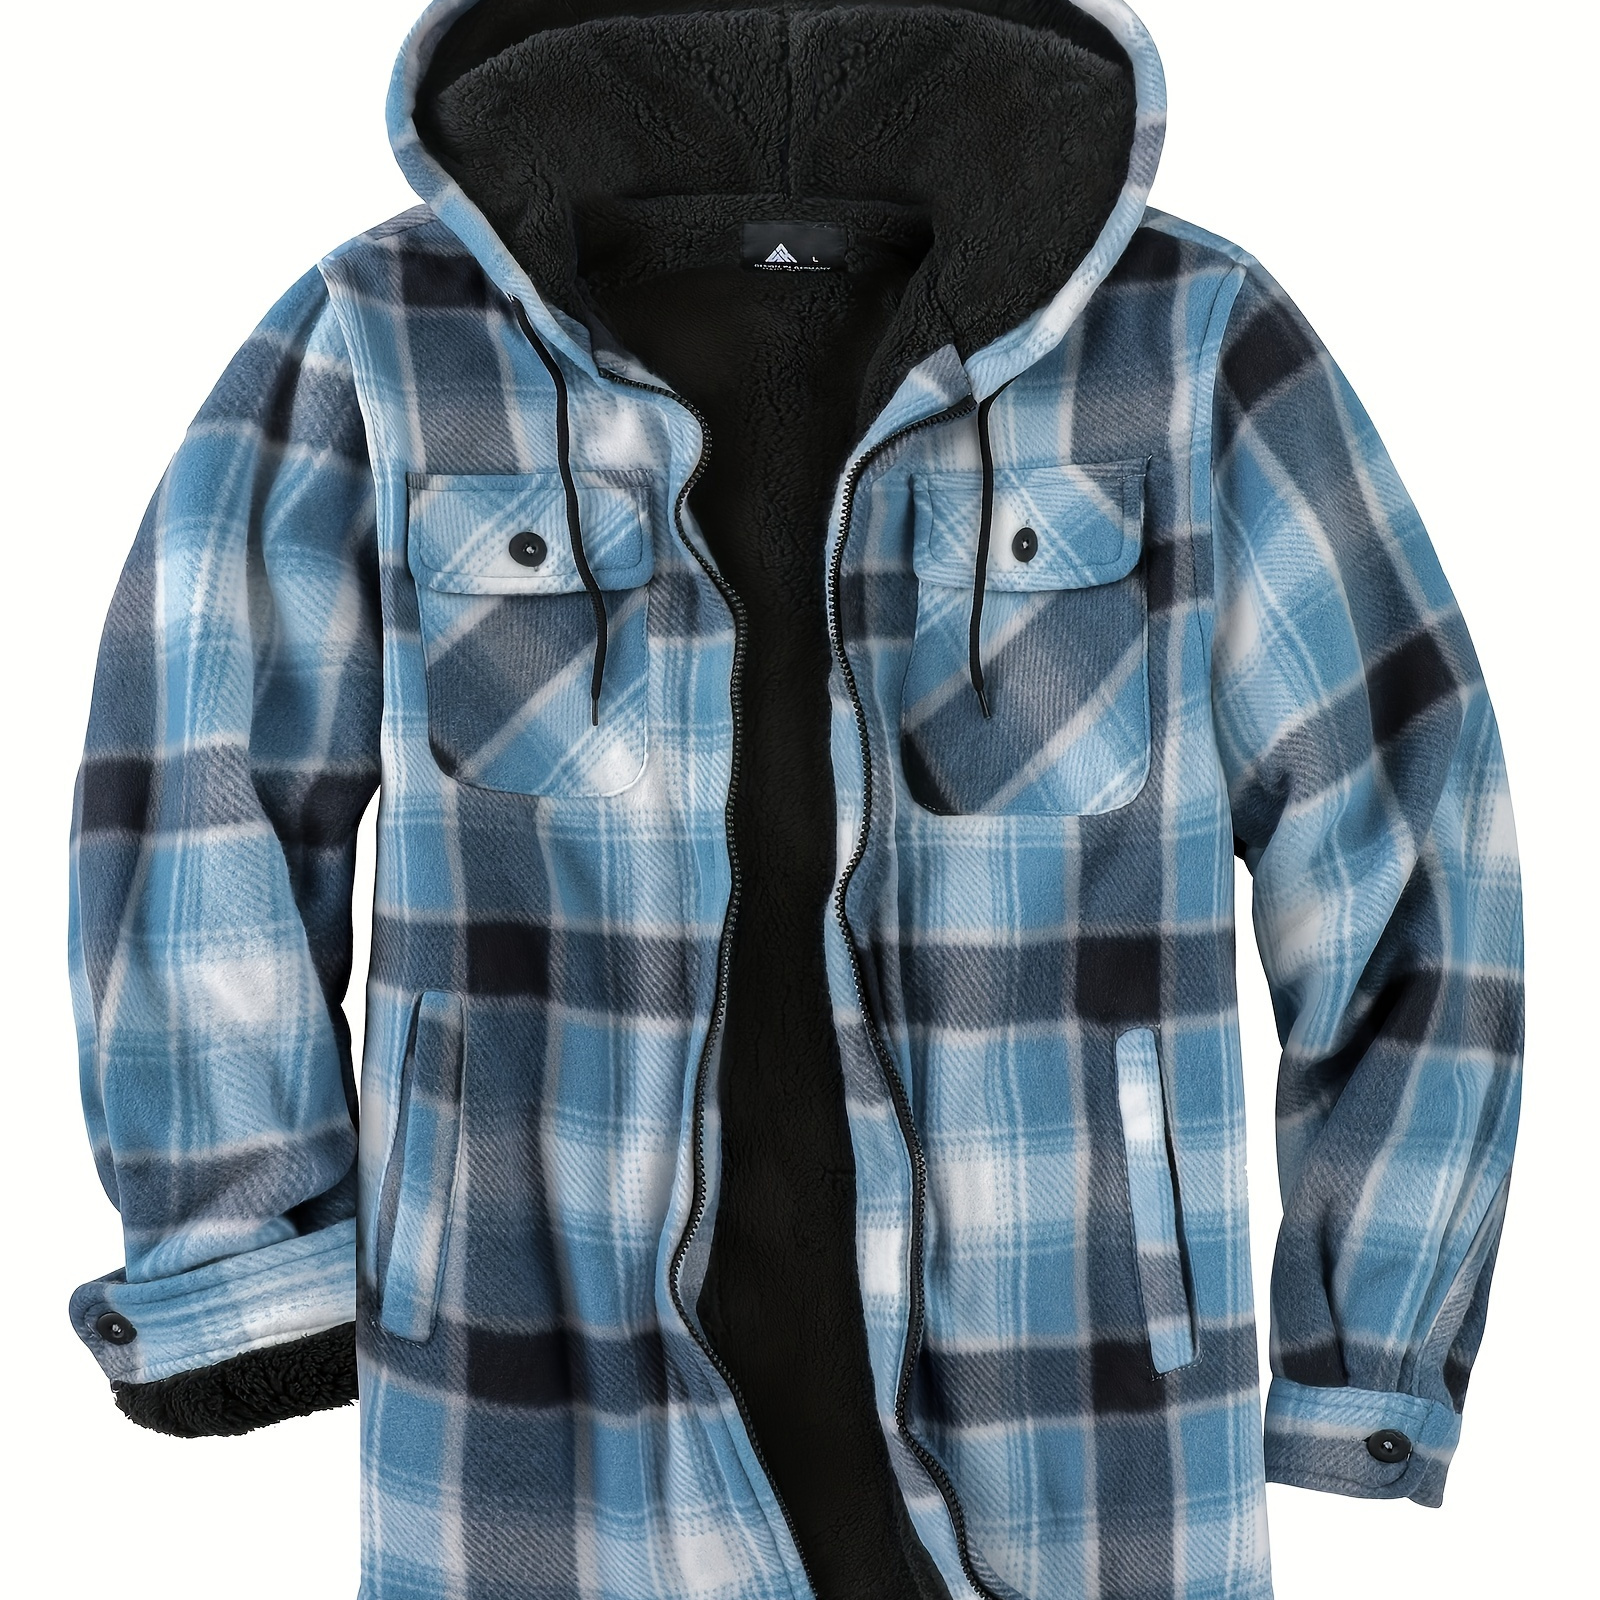 

Men's Trendy Hooded Plaid Sherpa Lined Coat Warm Jacket Long Coat Outwear For Men Winter Autumn Hiphop Style Streetwear